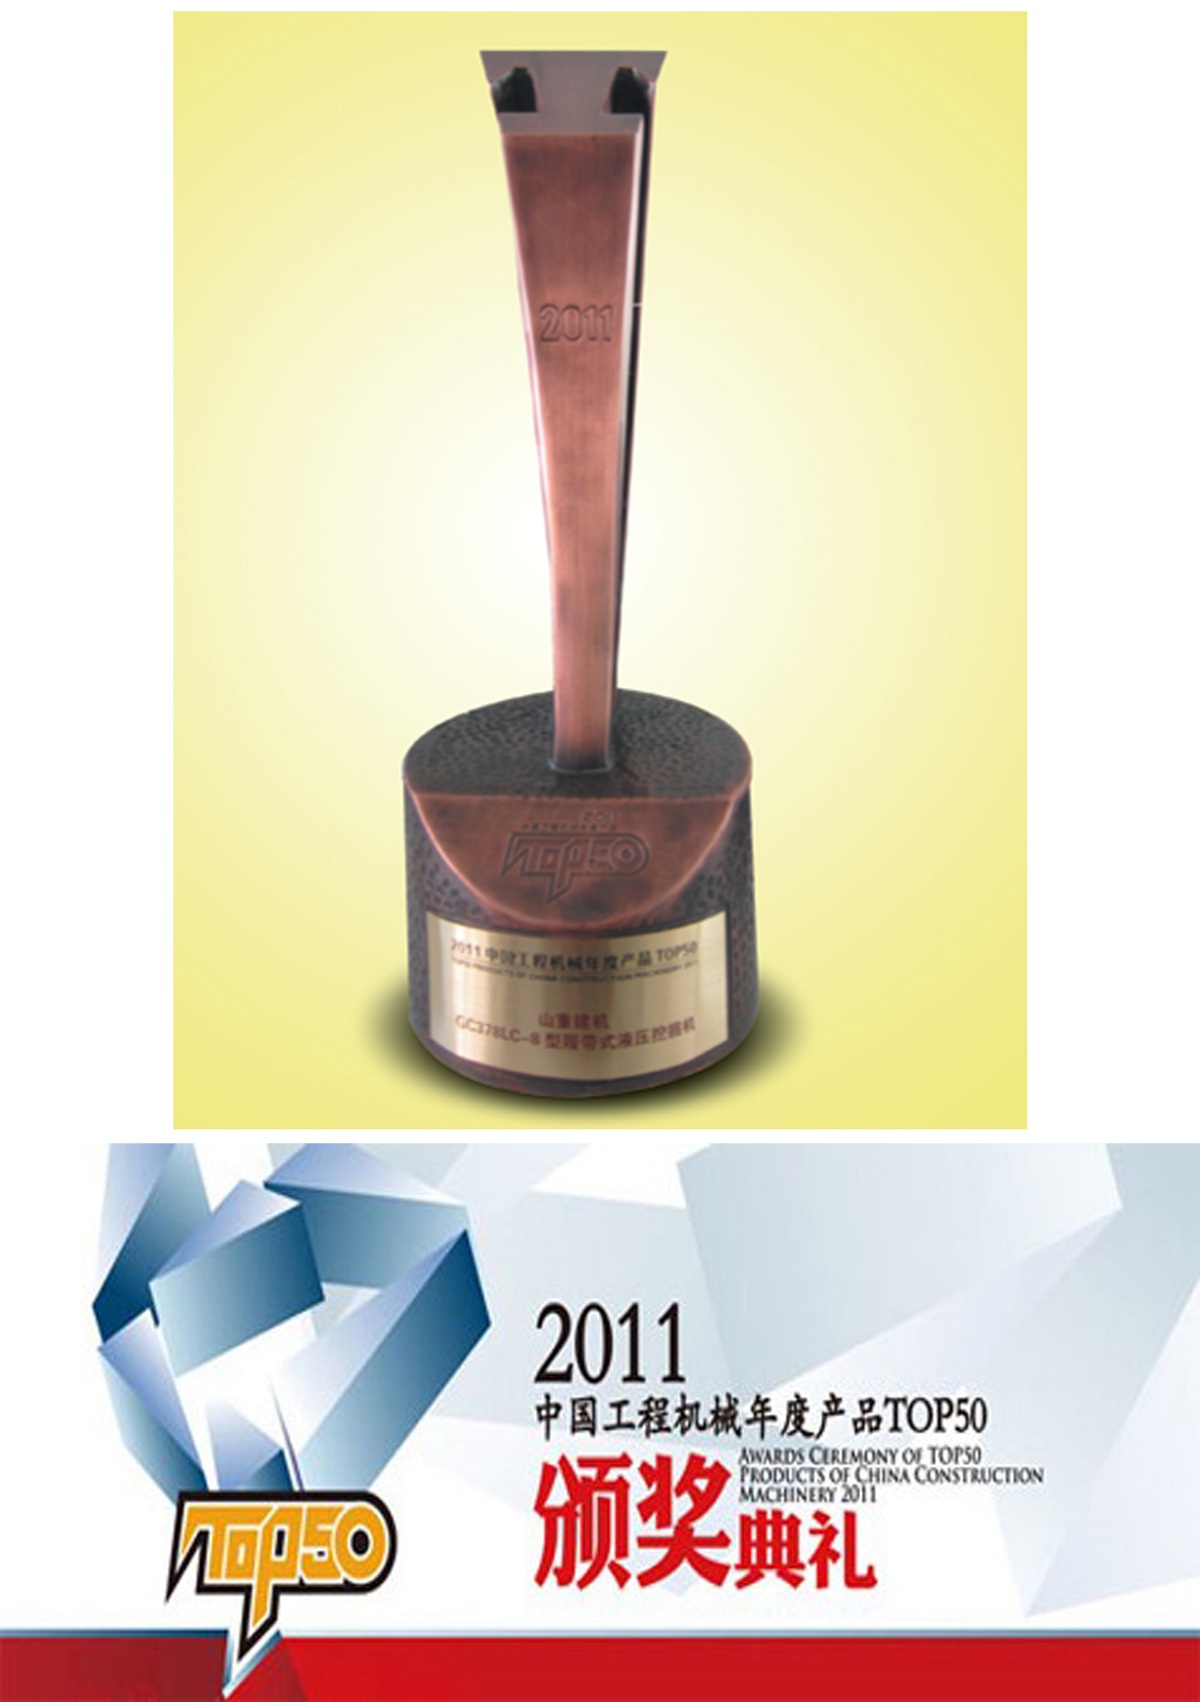 2011年GC378获得年度TOP50